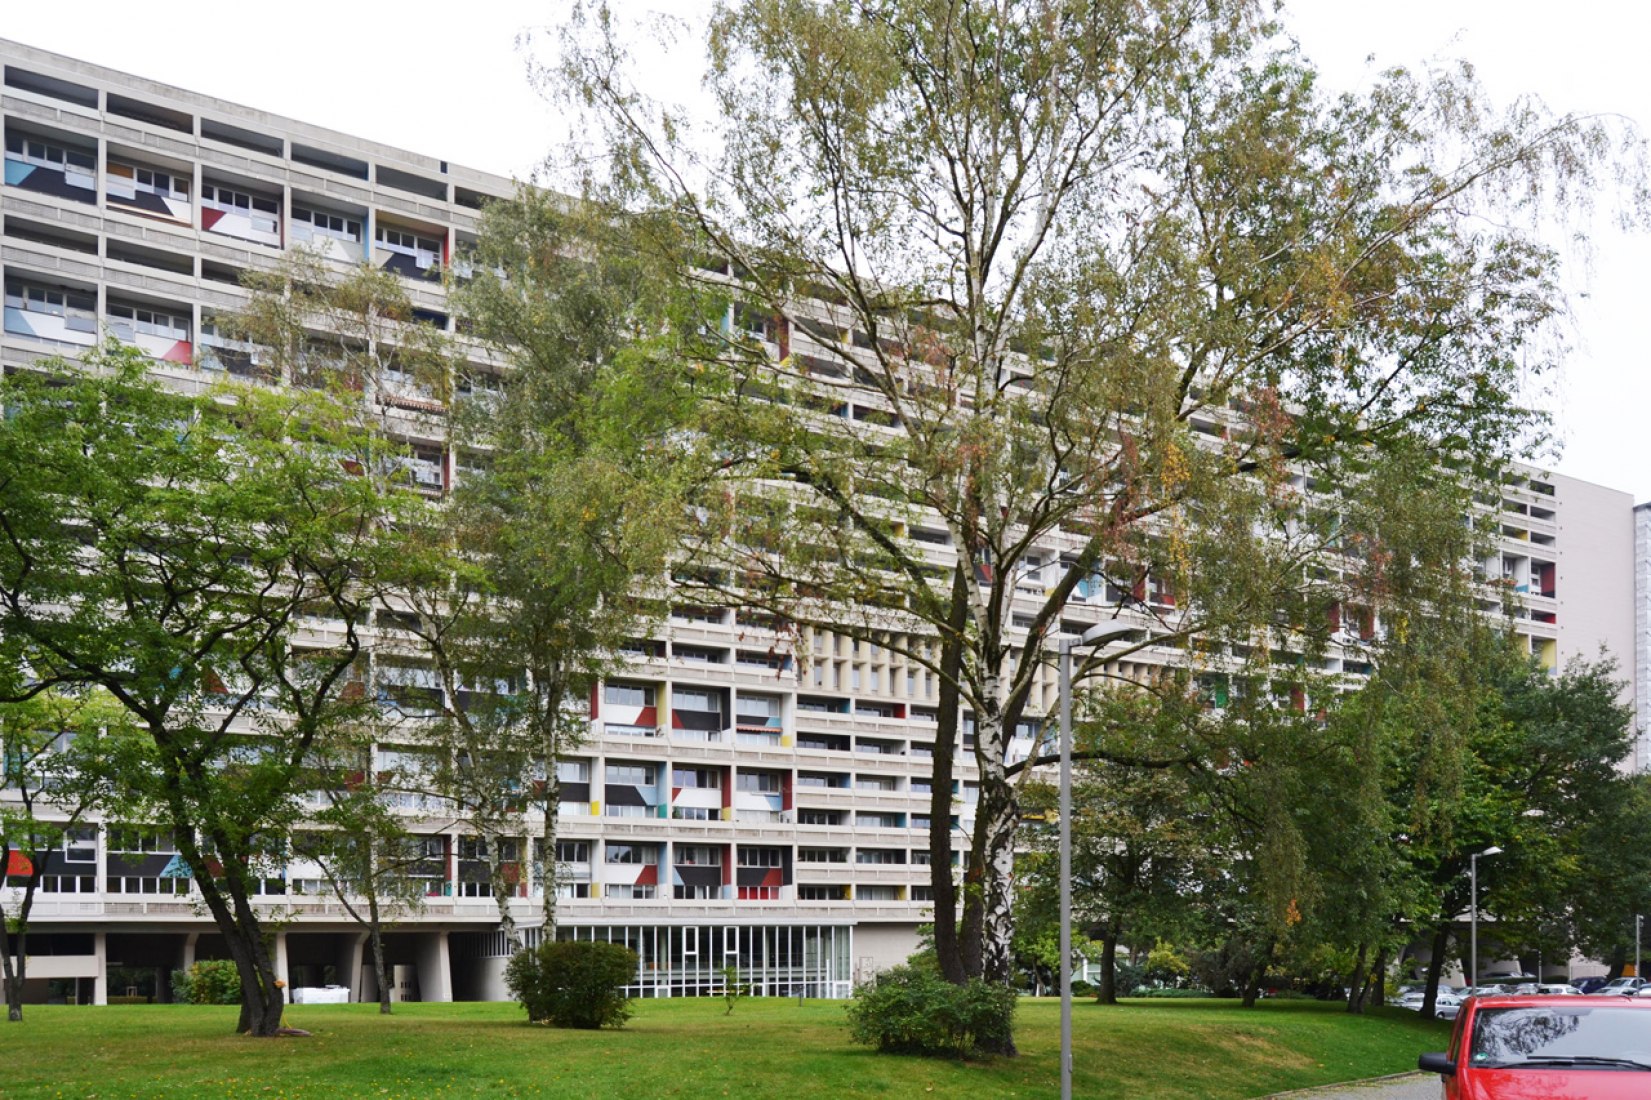 Exterior View. Unité d'habitation of Le Corbusier in Berlin, Germany. Photography © Branly Pérez.